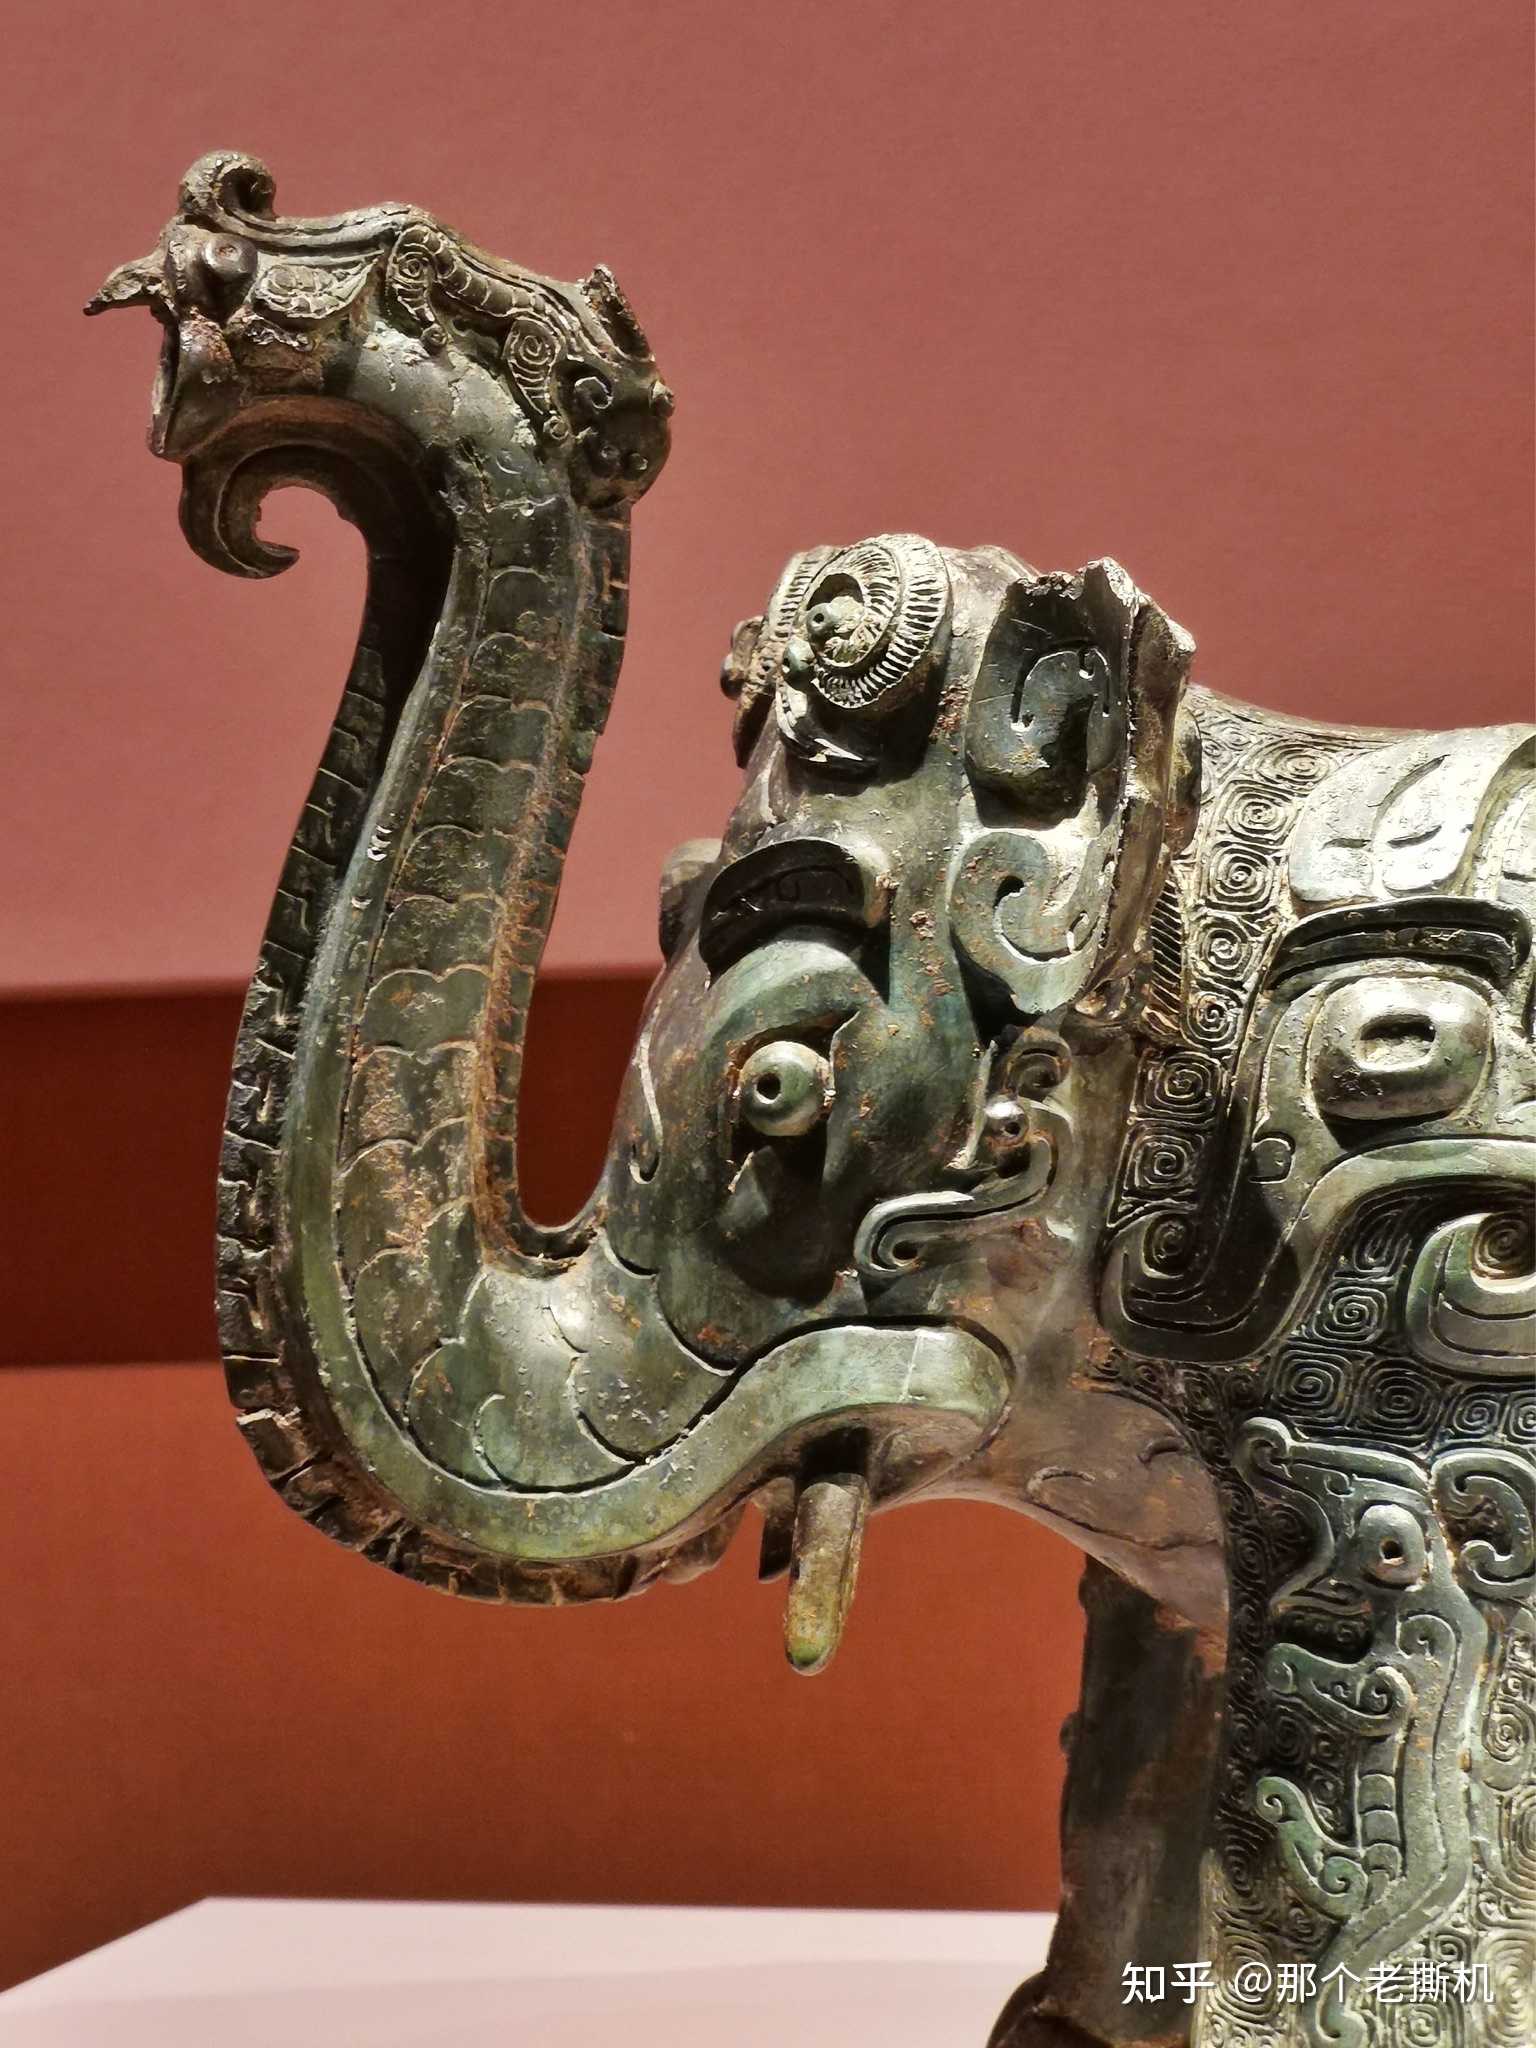 那个老撕机 的想法: 象尊,商代,湖南省博物馆 